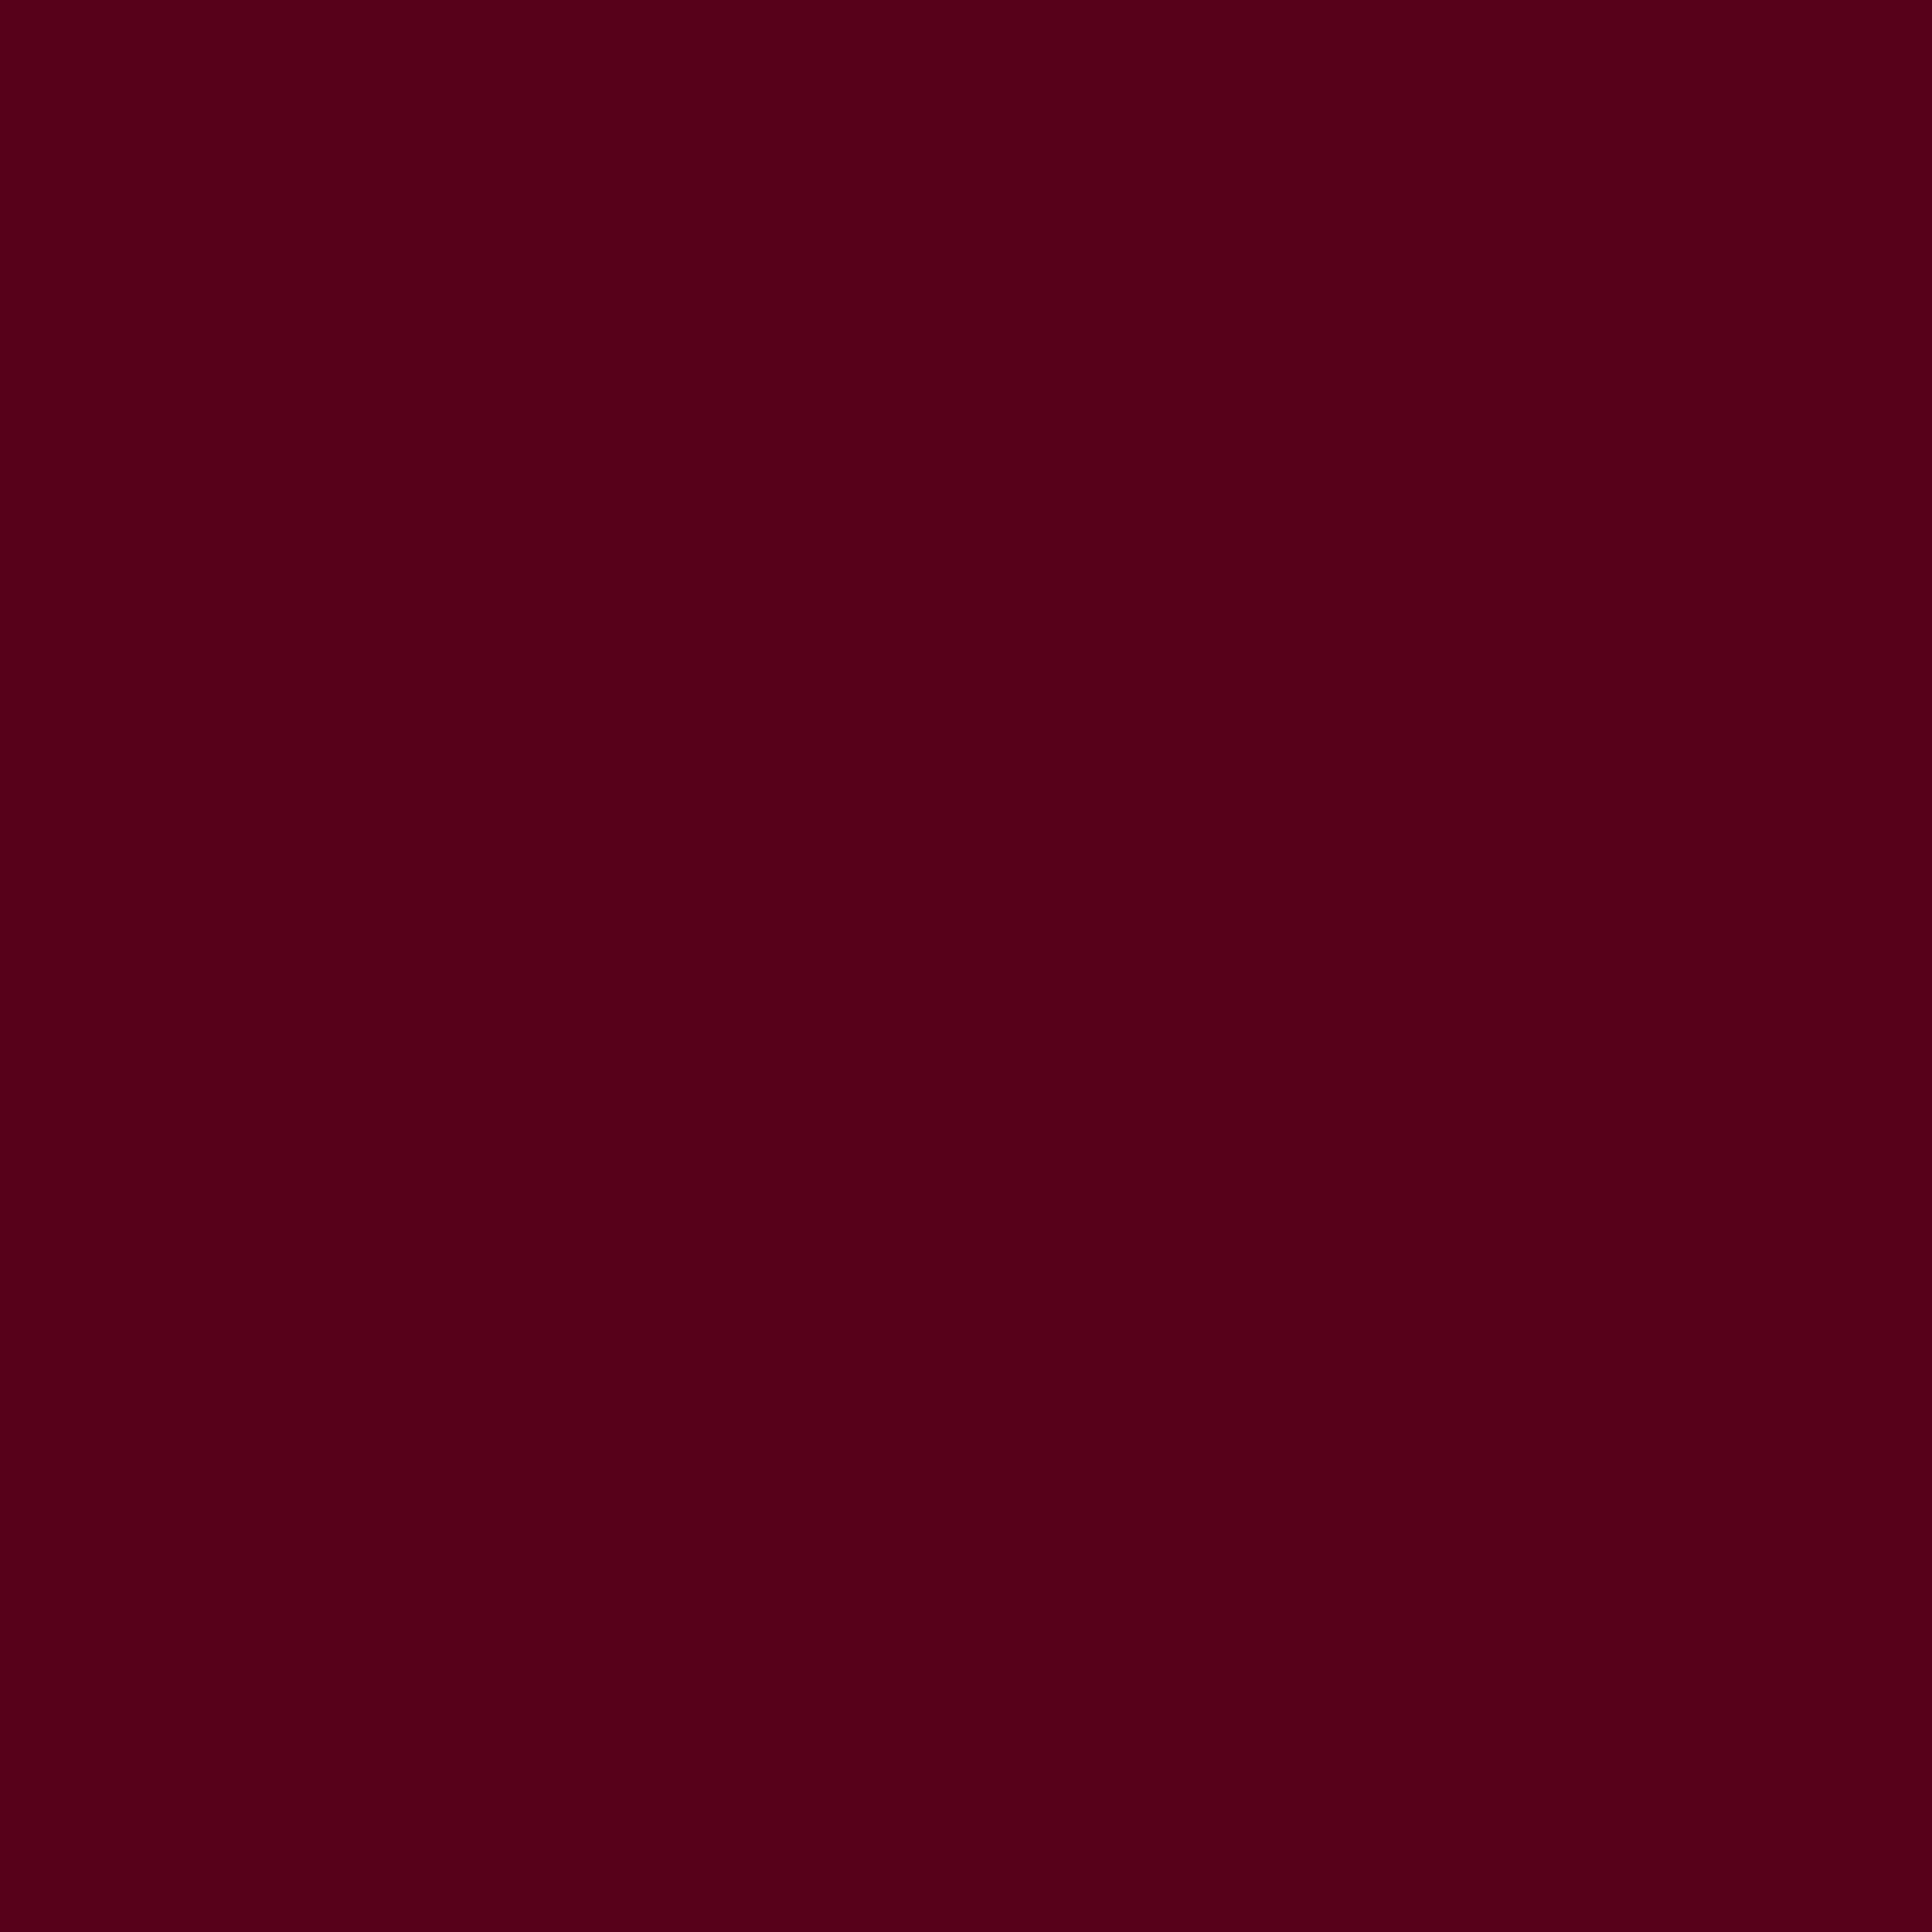 2048x2048 Dark Scarlet Solid Color Background